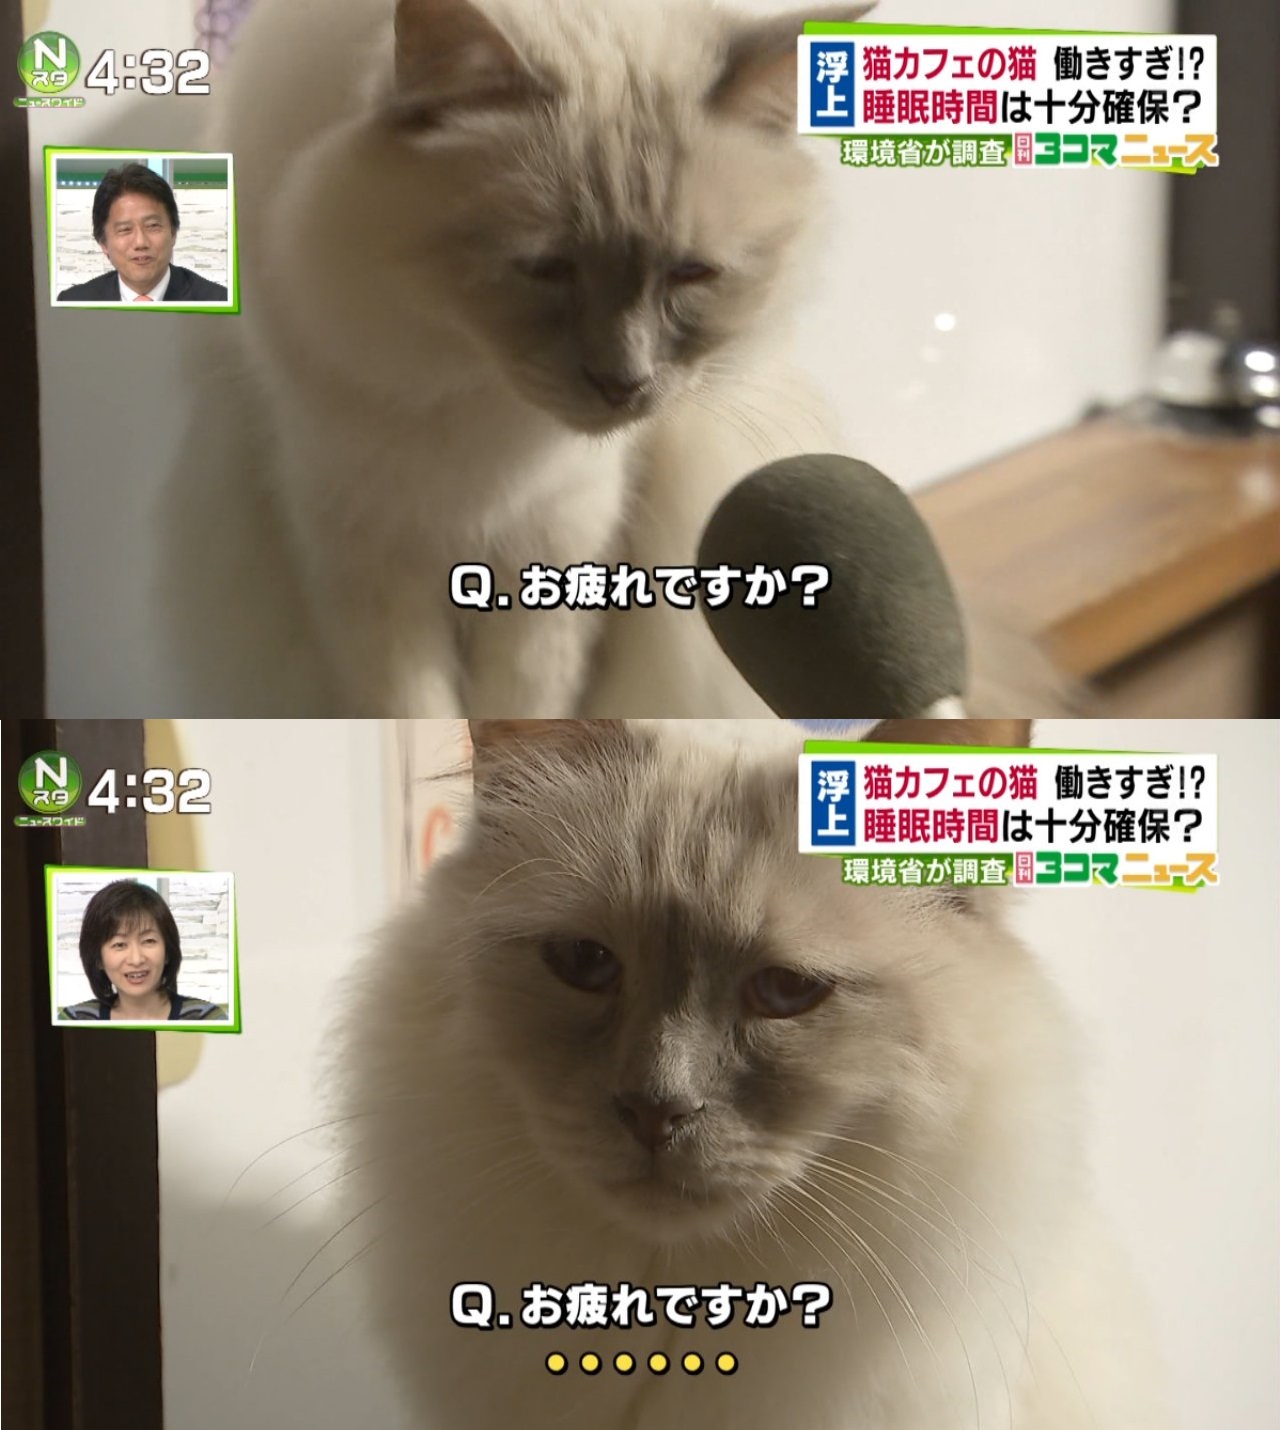 「猫ですら深夜まで働かされるブラック日本」　猫カフェの営業時間延長を承認するニュースにネット驚愕